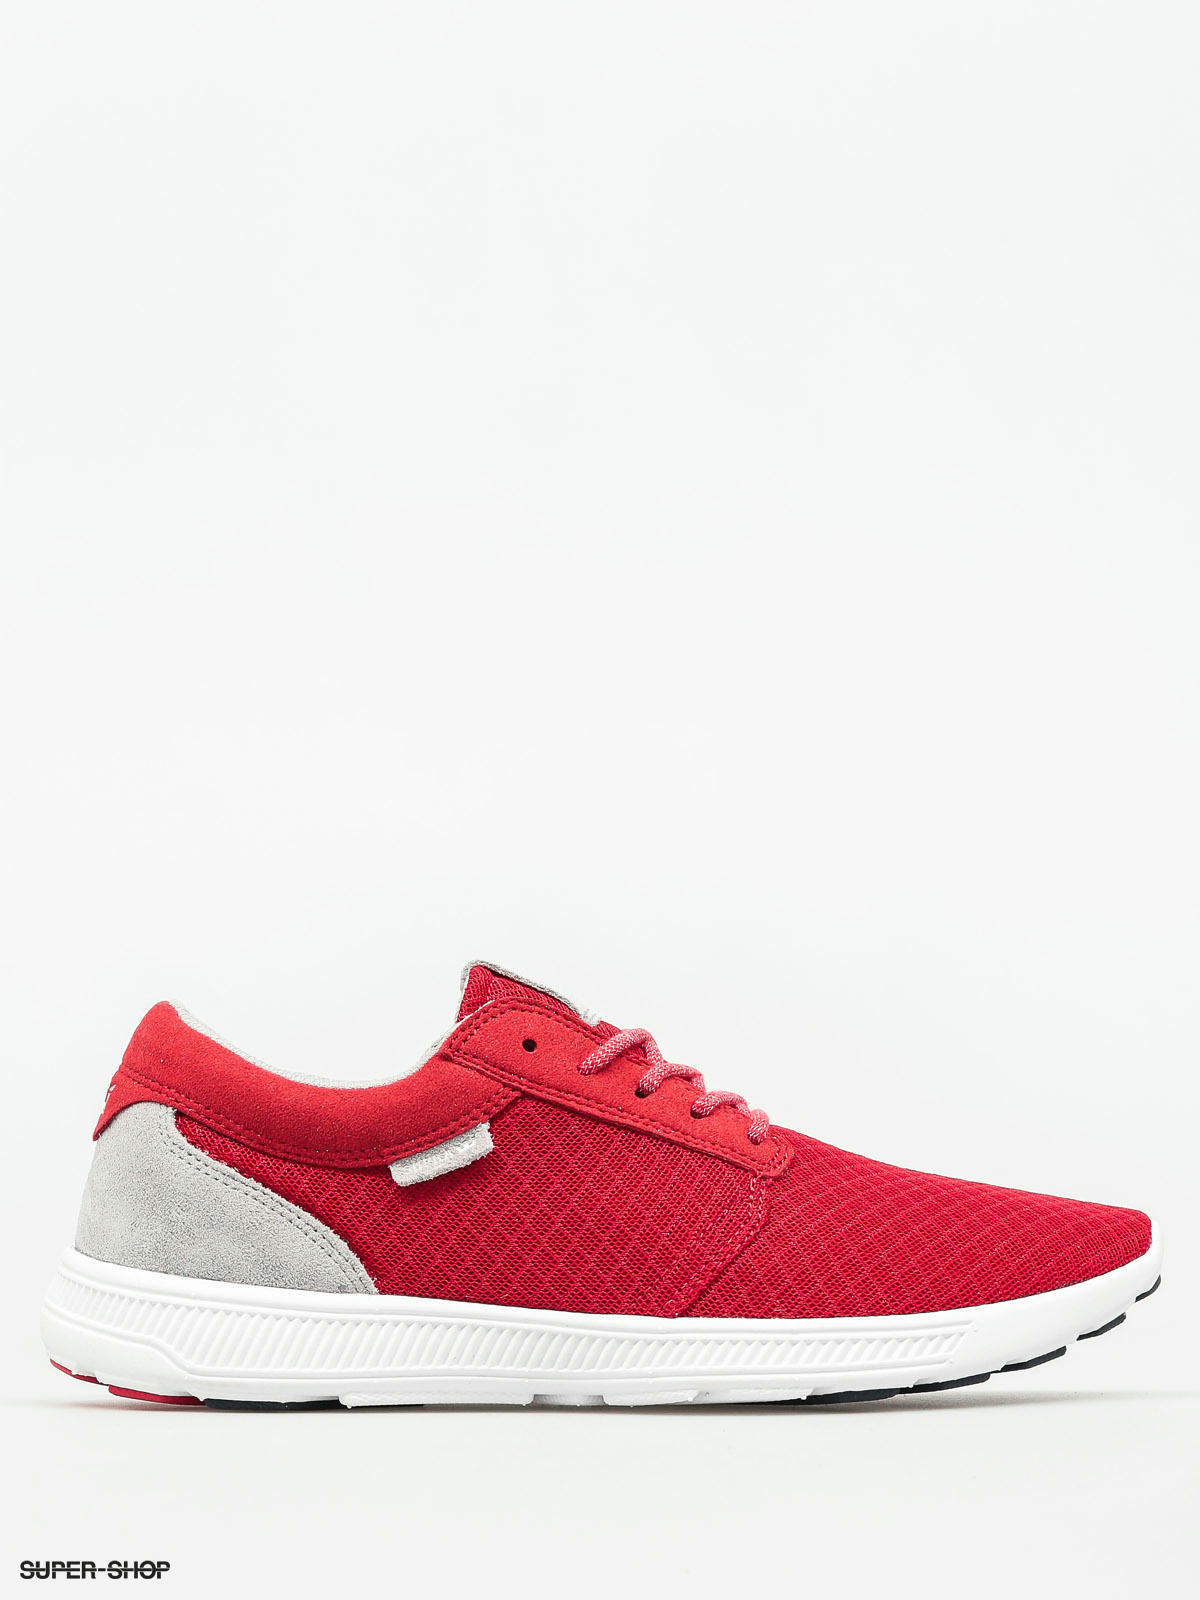 eerlijk Dubbelzinnigheid Invloed Supra Shoes Hammer Run (red white)